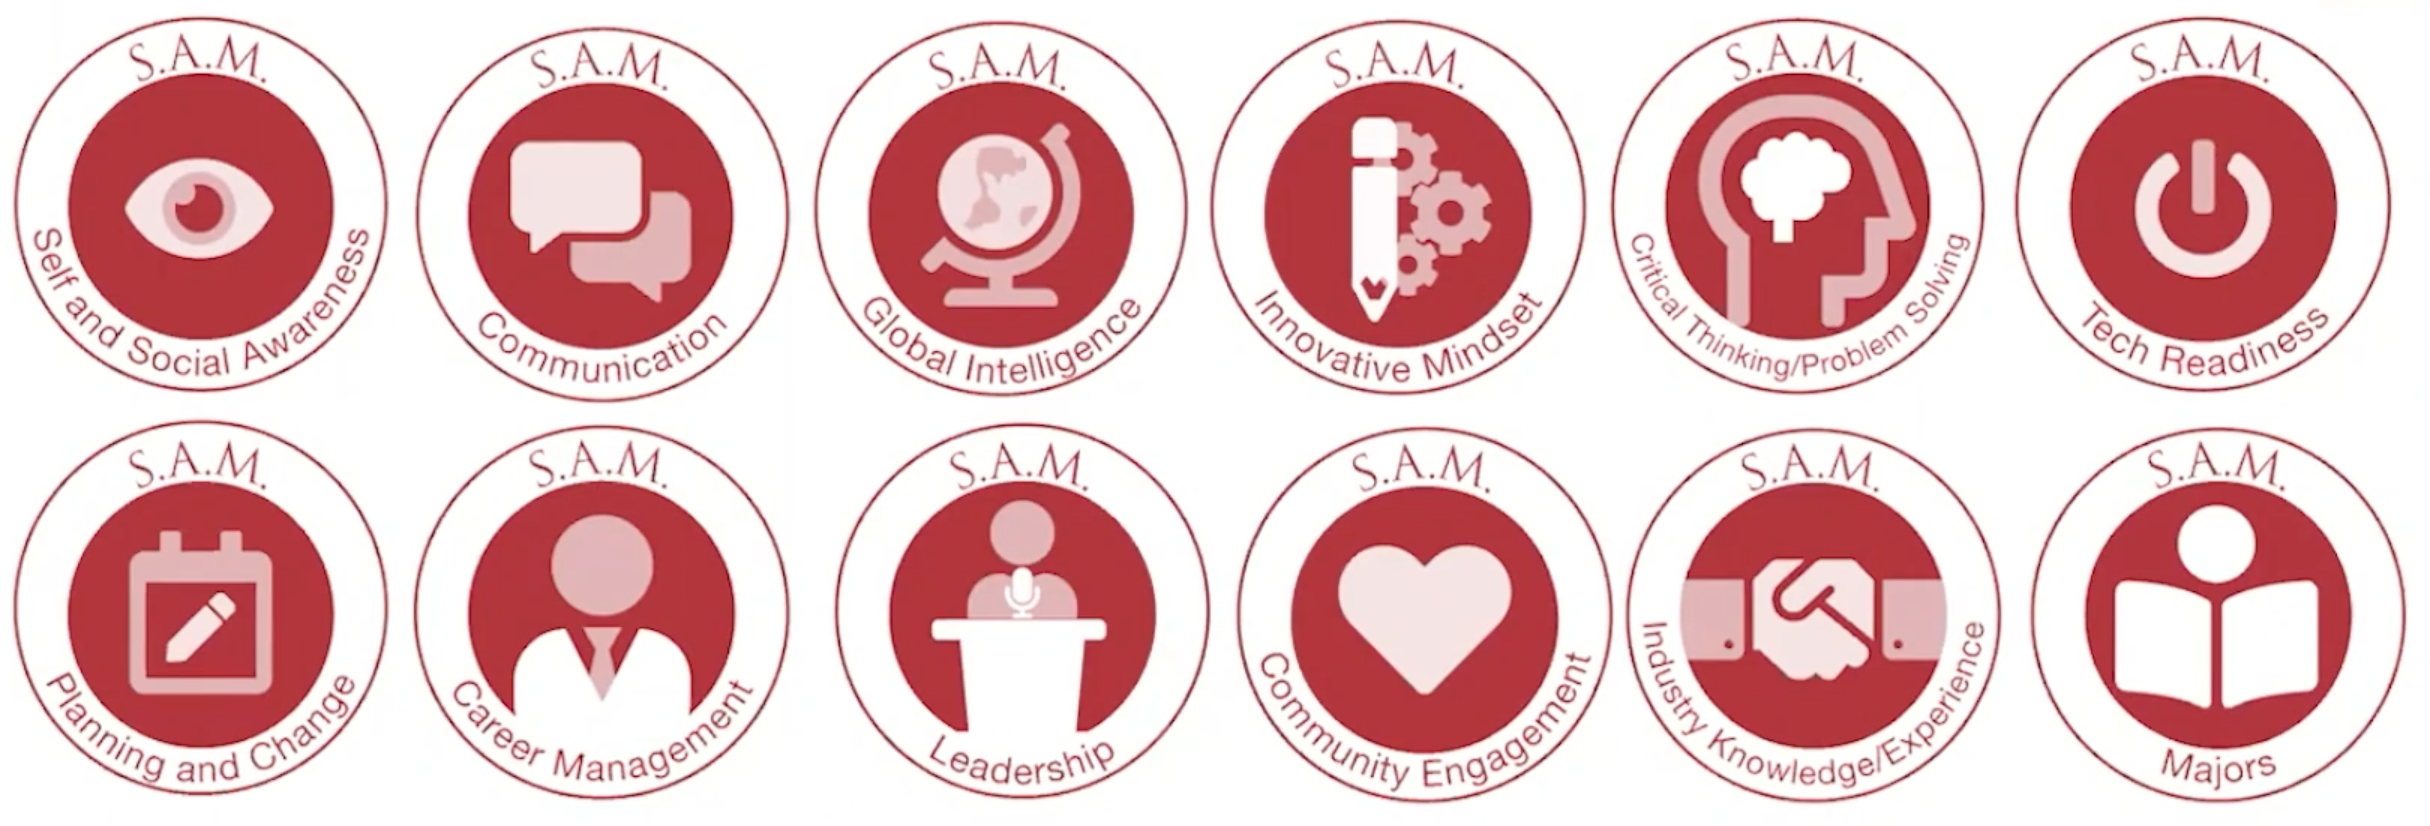 SAM Badges